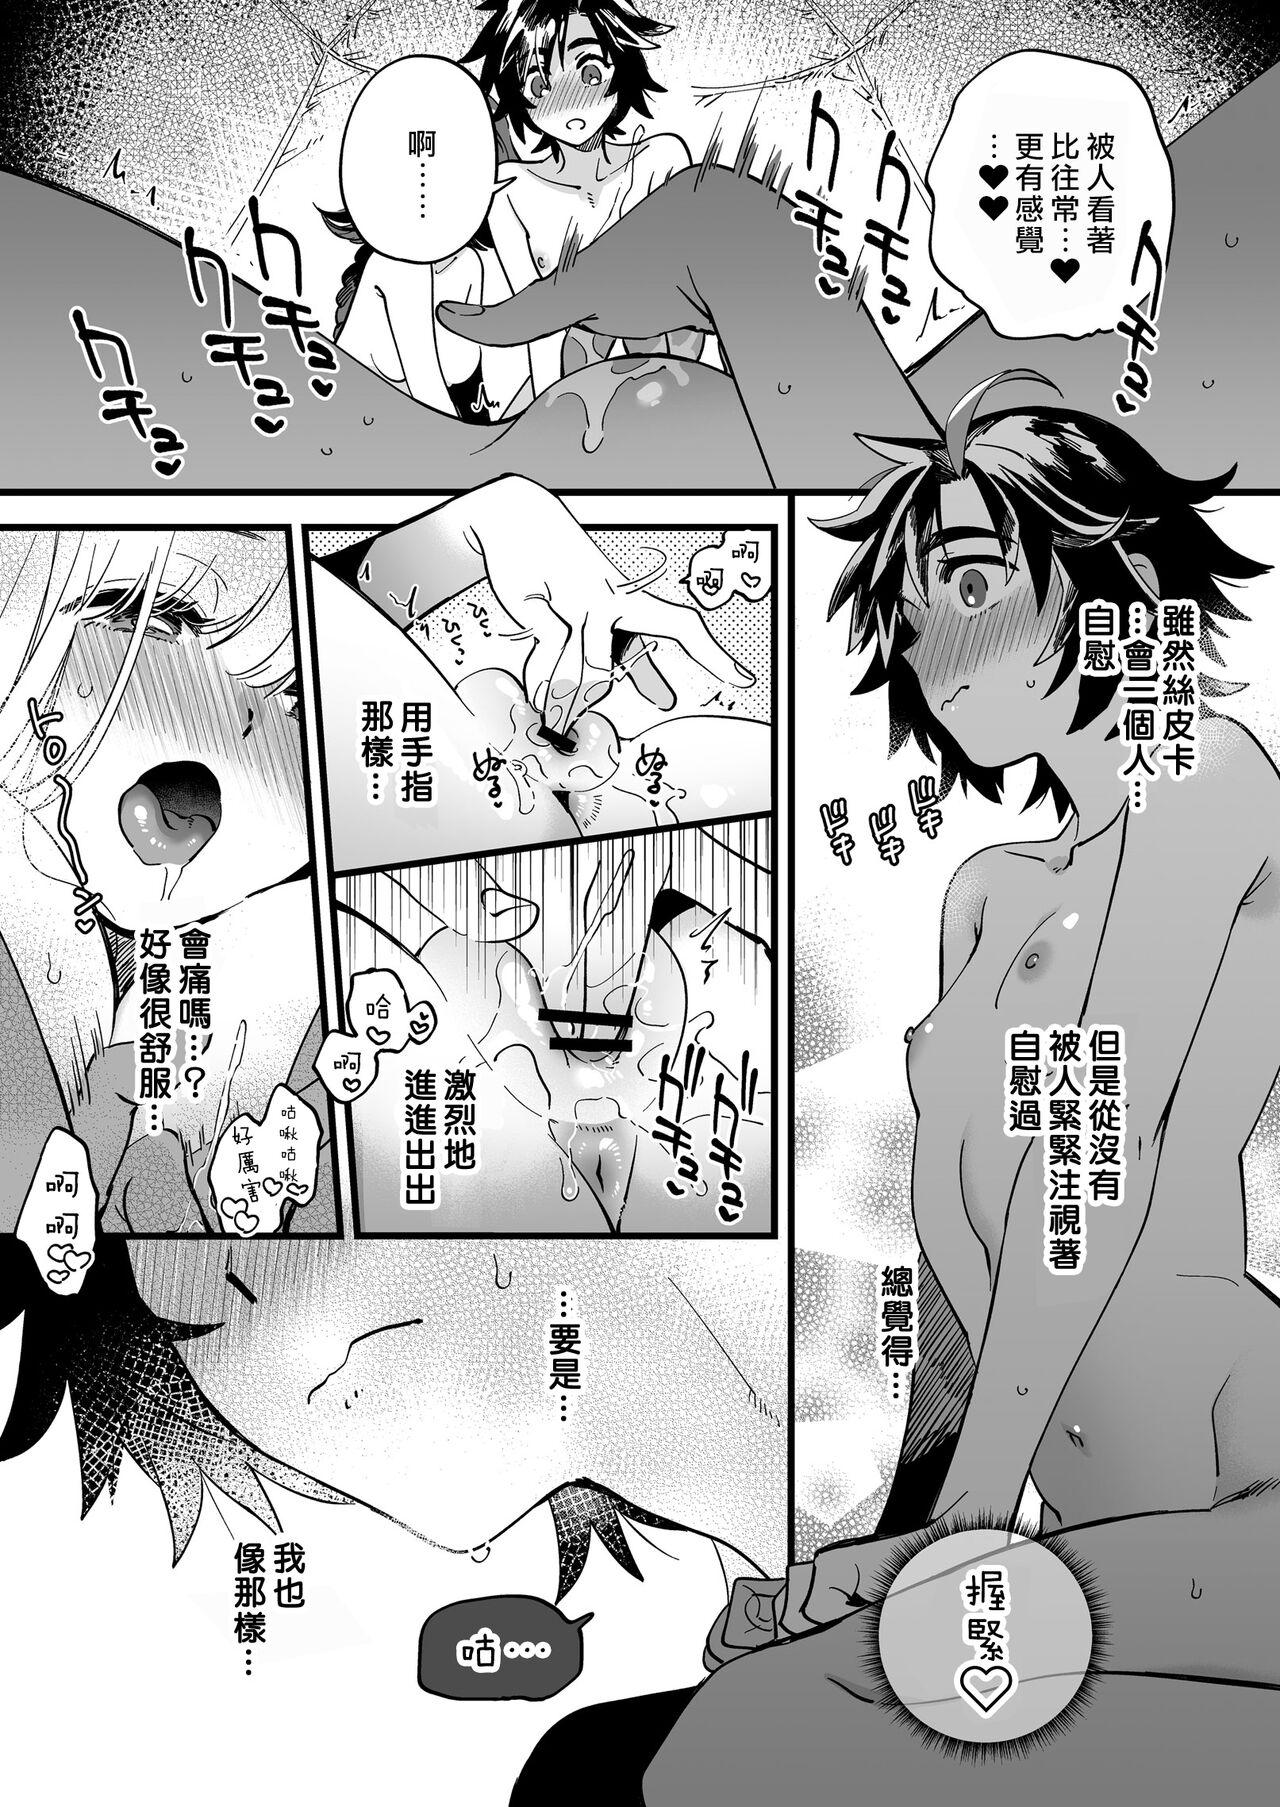 Ano Nakayoshi Onna Boukensya ha Himitsu no tokkun wo Shiteiru rasii | 關係很好的女冒險者們似乎正在進行秘密❤特訓 - Original Mum - Page 11